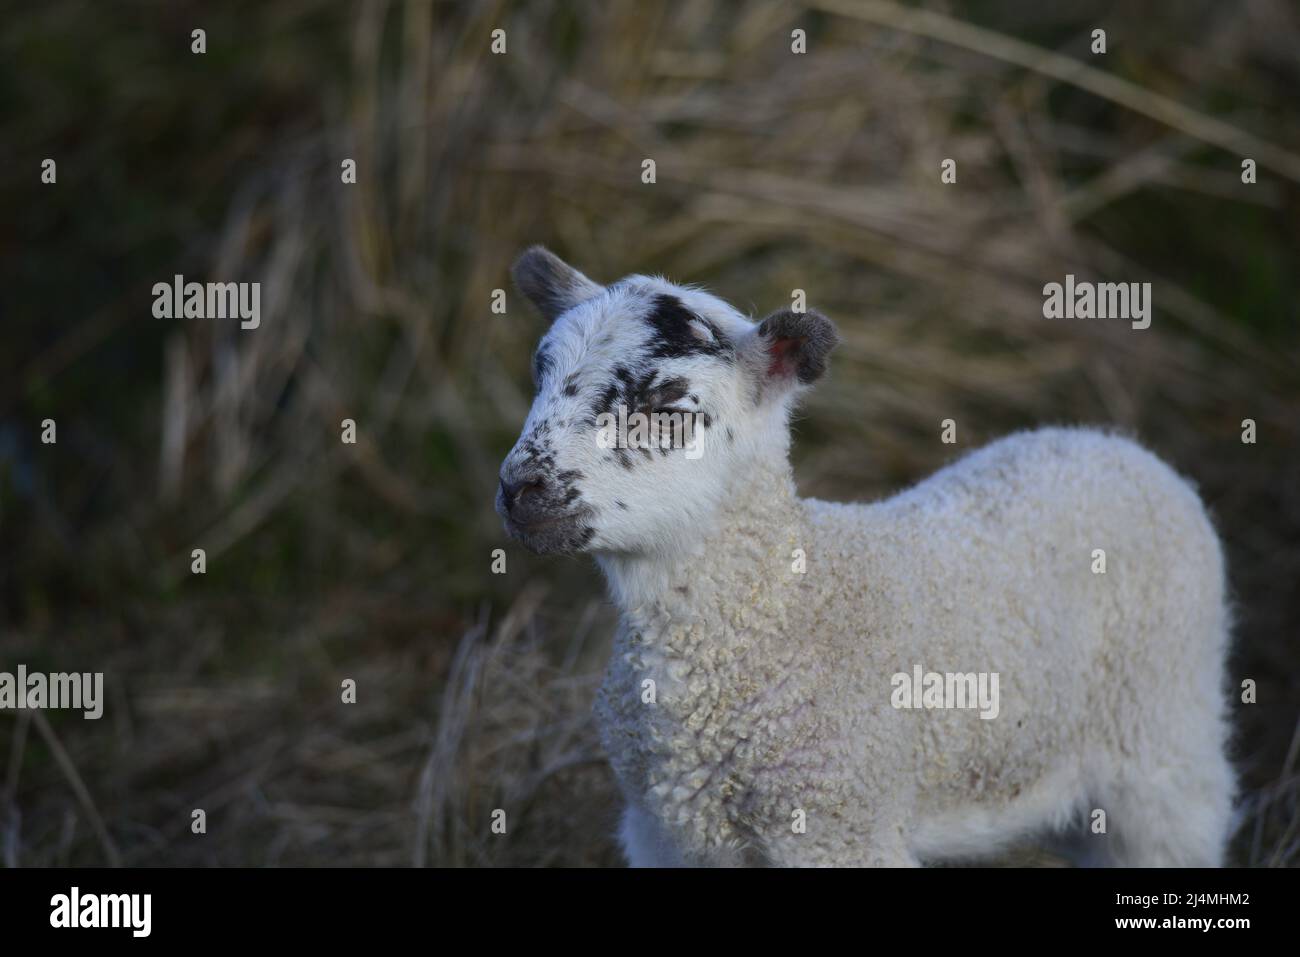 Scottish Blackface lamb Stock Photo